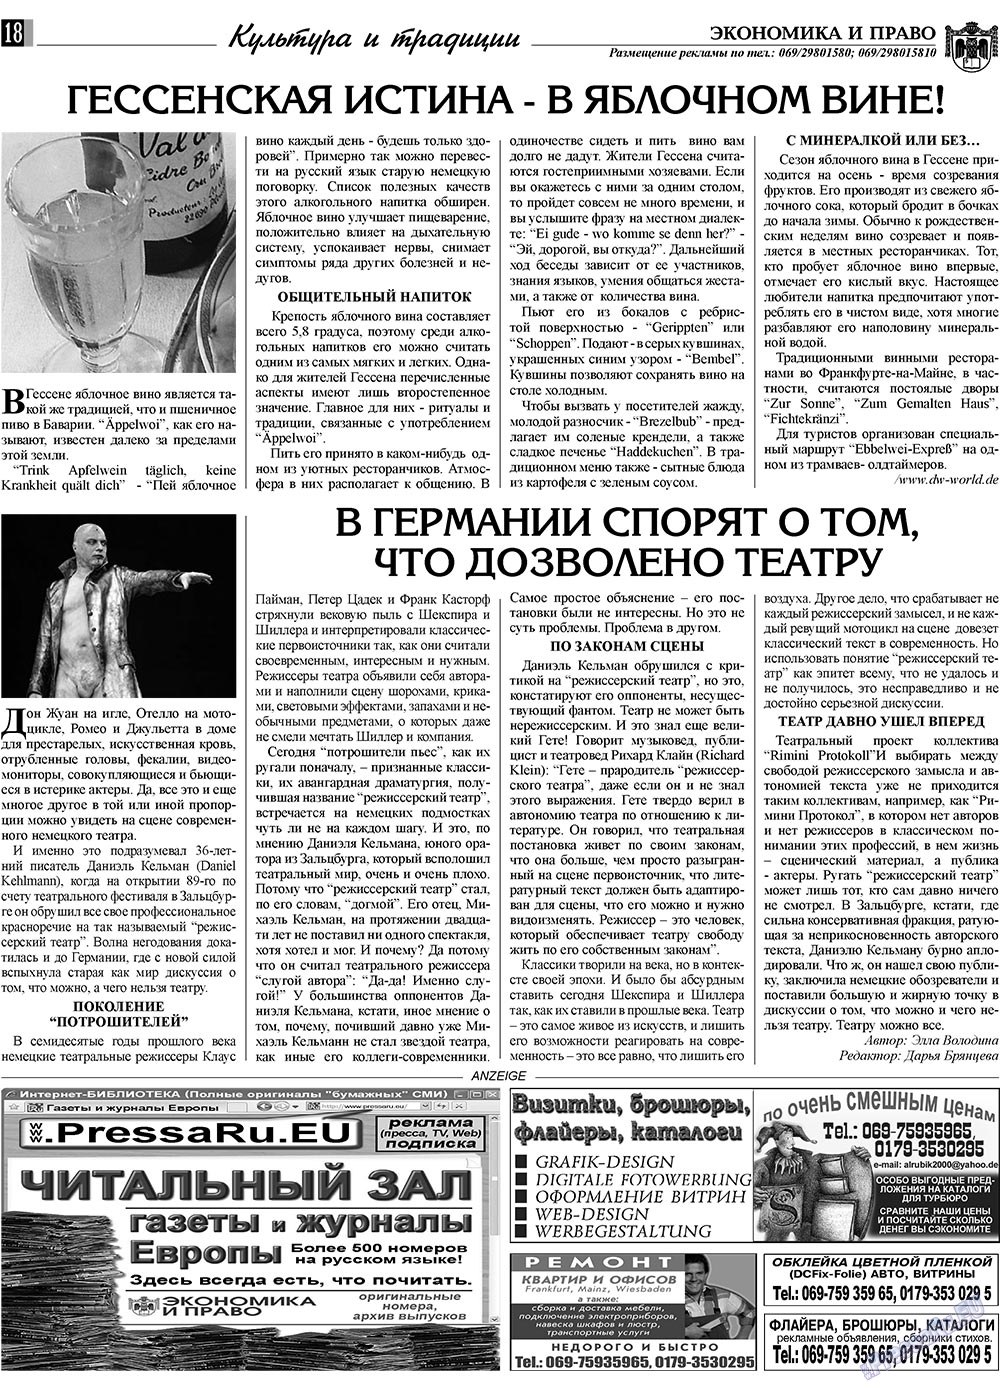 Экономика и право, газета. 2009 №11 стр.18